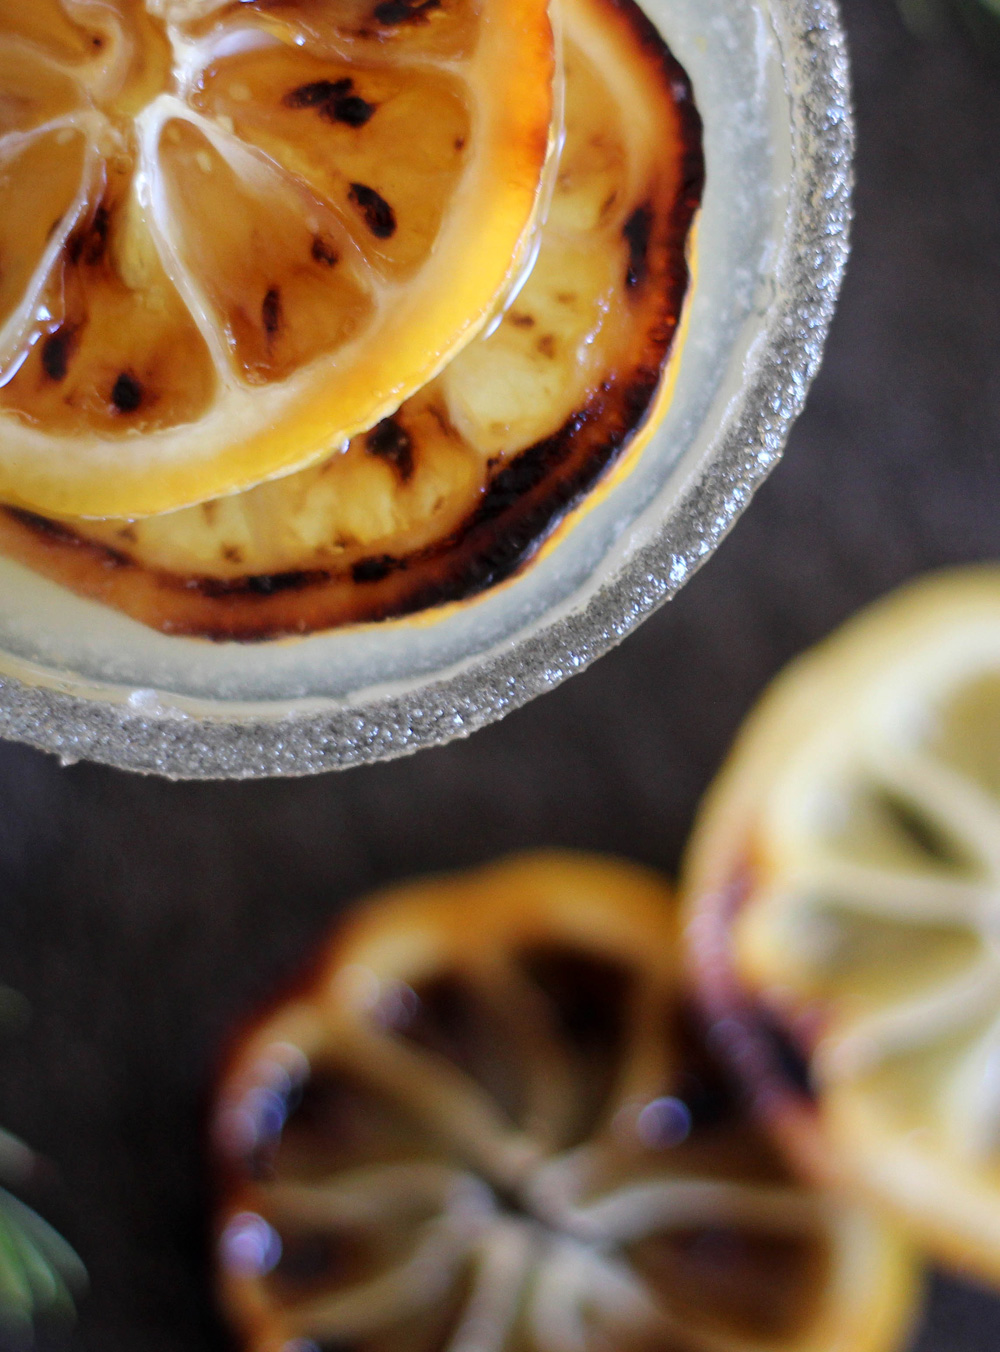 Good Eats: Broiled Lemon & Rosemary Cocktail | PepperDesignBlog.com